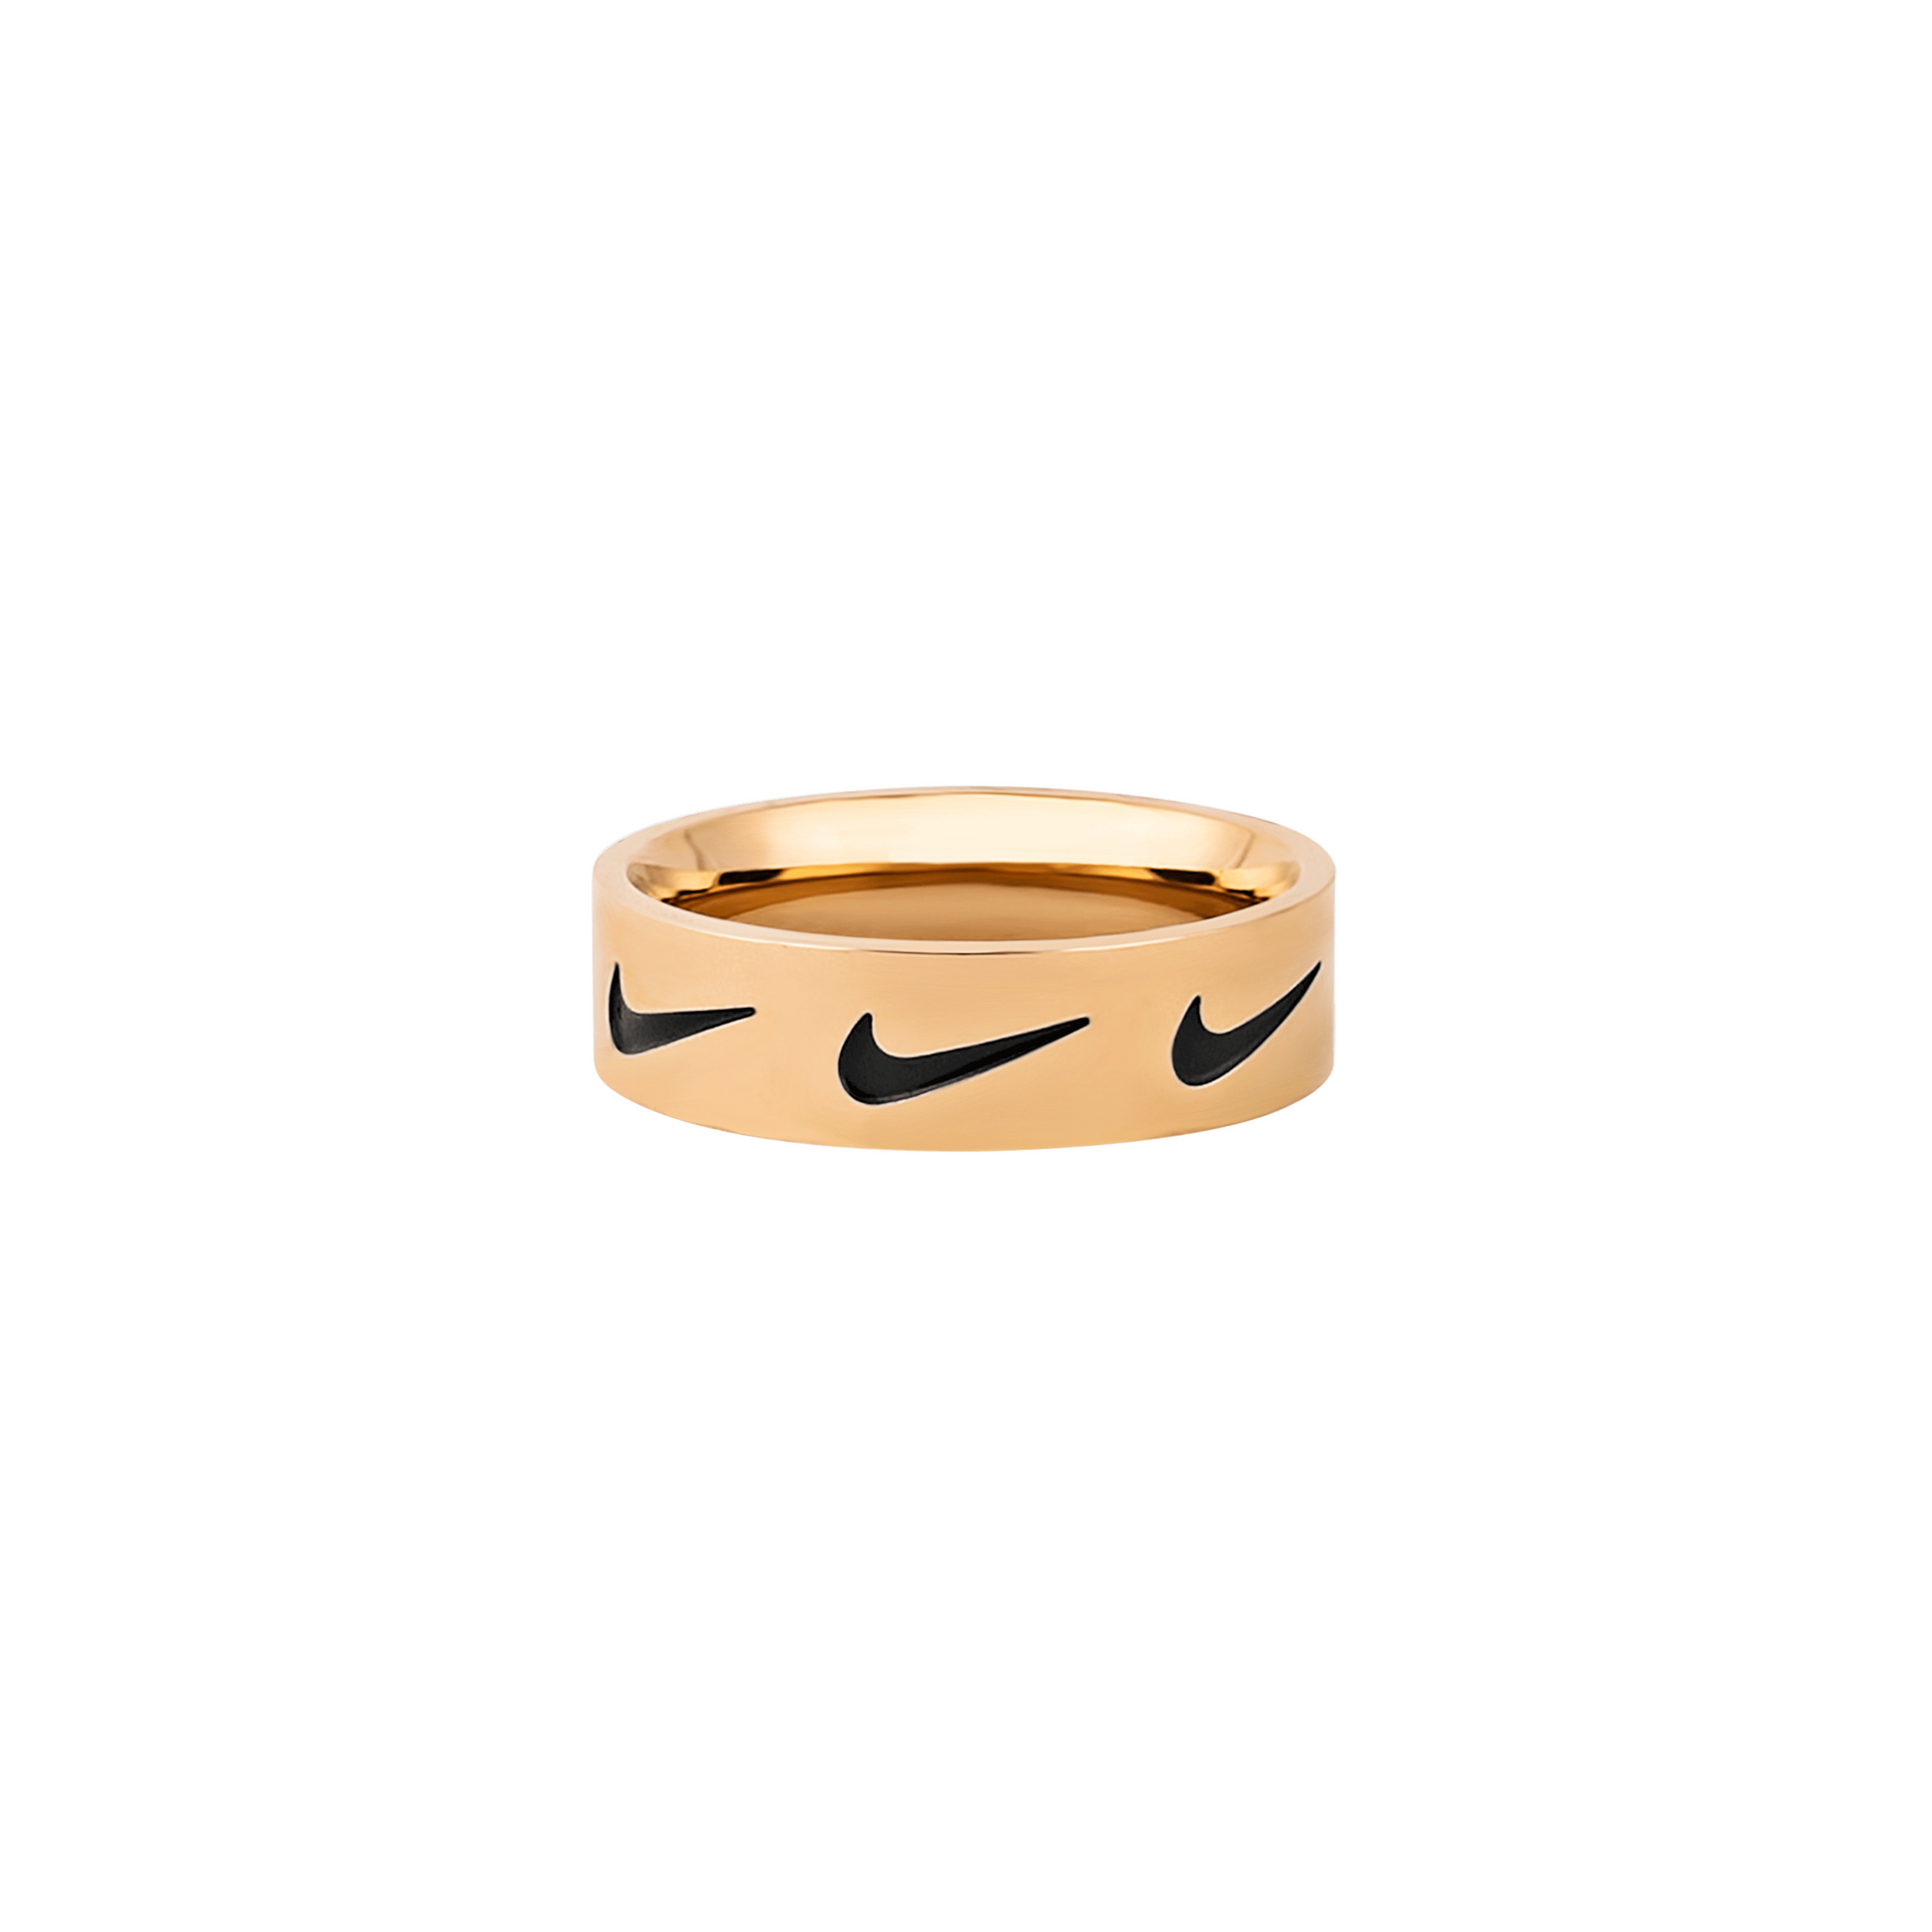 Nike Swoosh Repeat Ring Gold - RetroRings